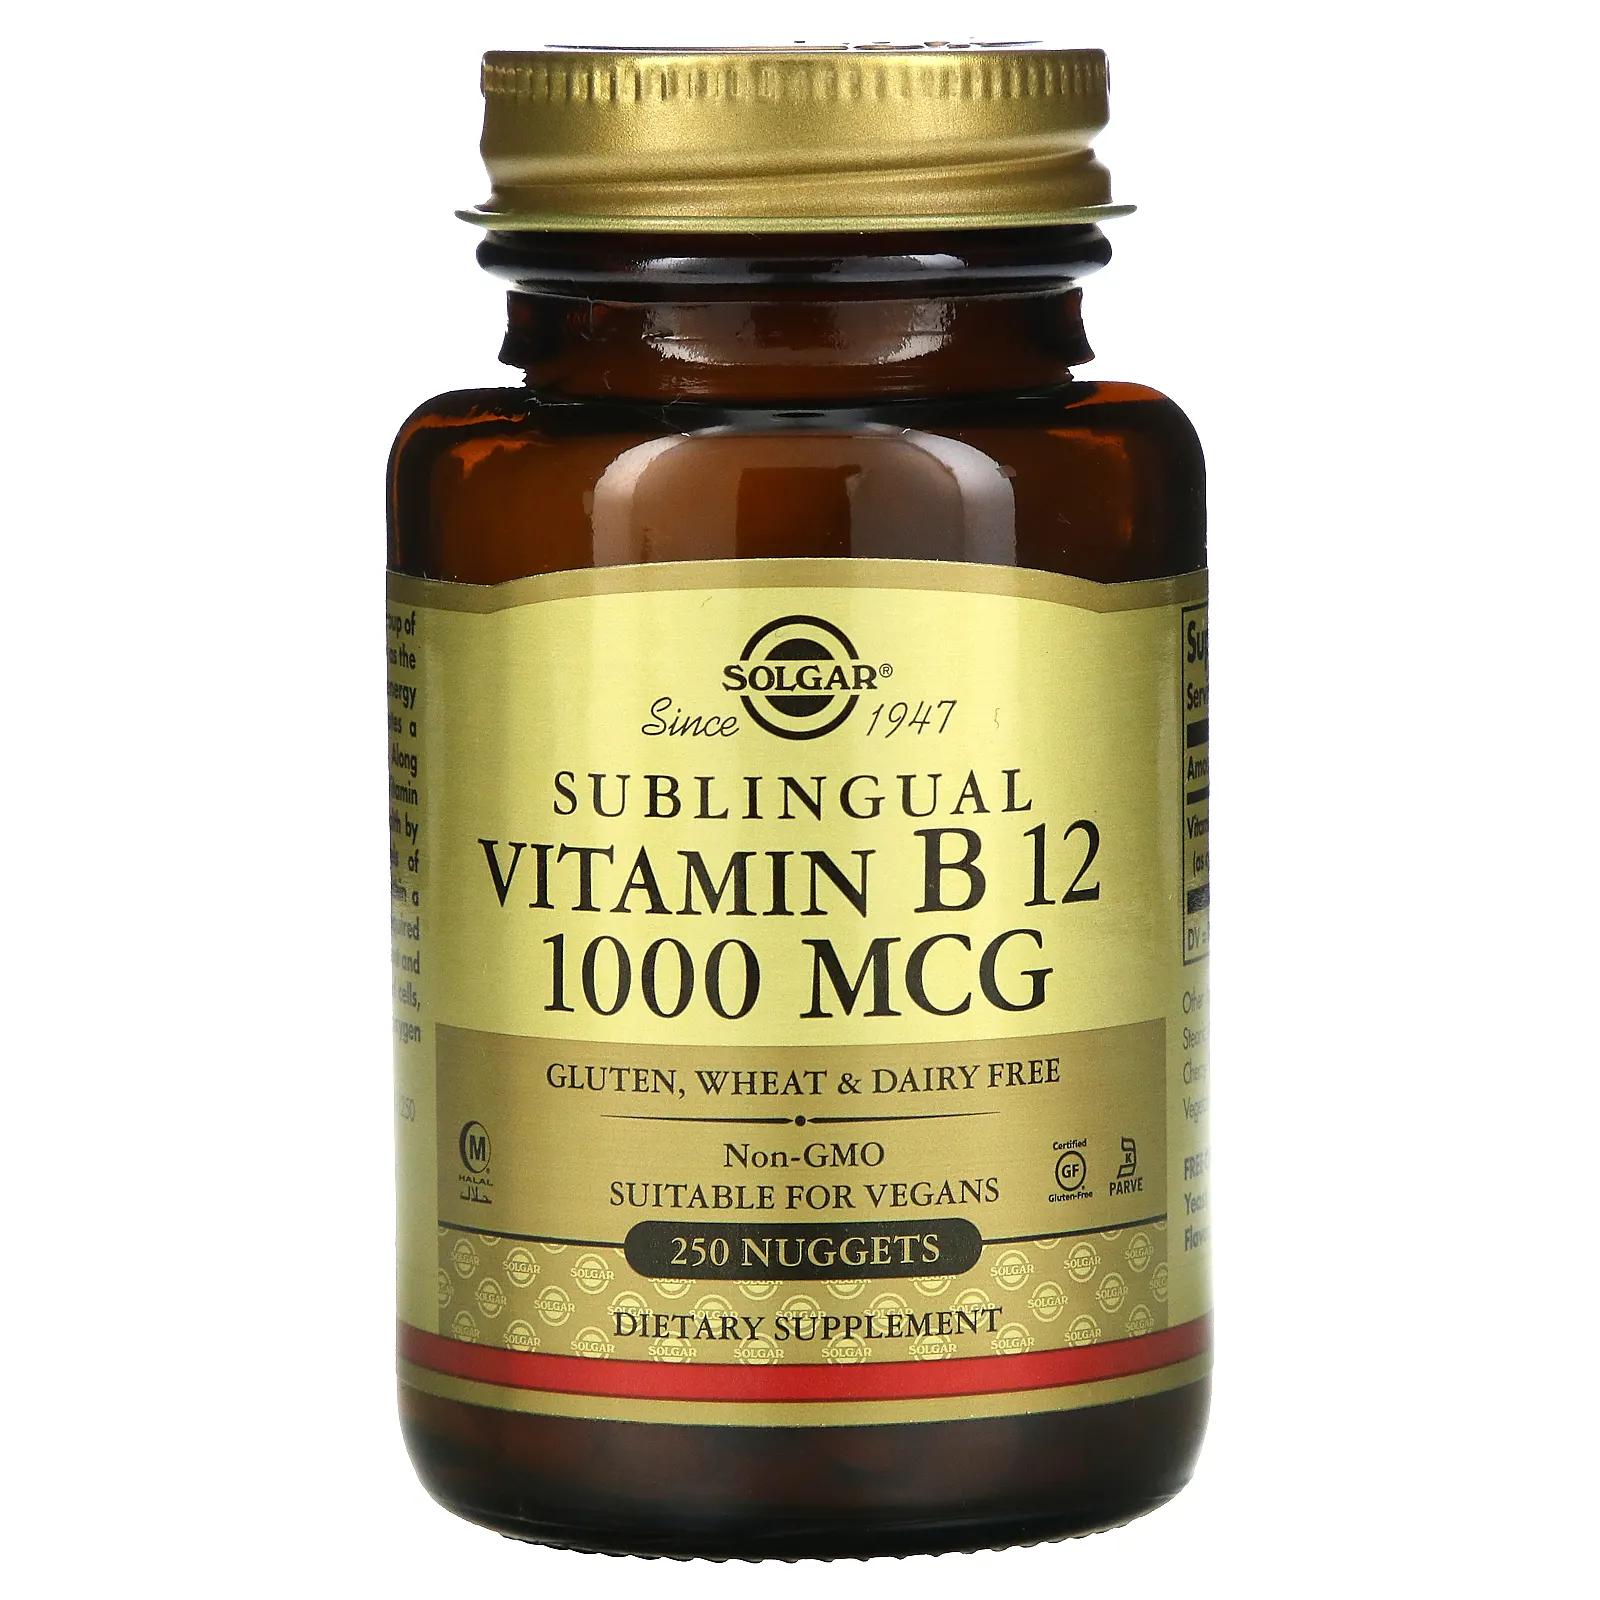 Solgar Витамин B12 сублингвальный 1000 мкг 250 капсула solgar сублингвальный витамин b12 1000 мкг 250 капсул